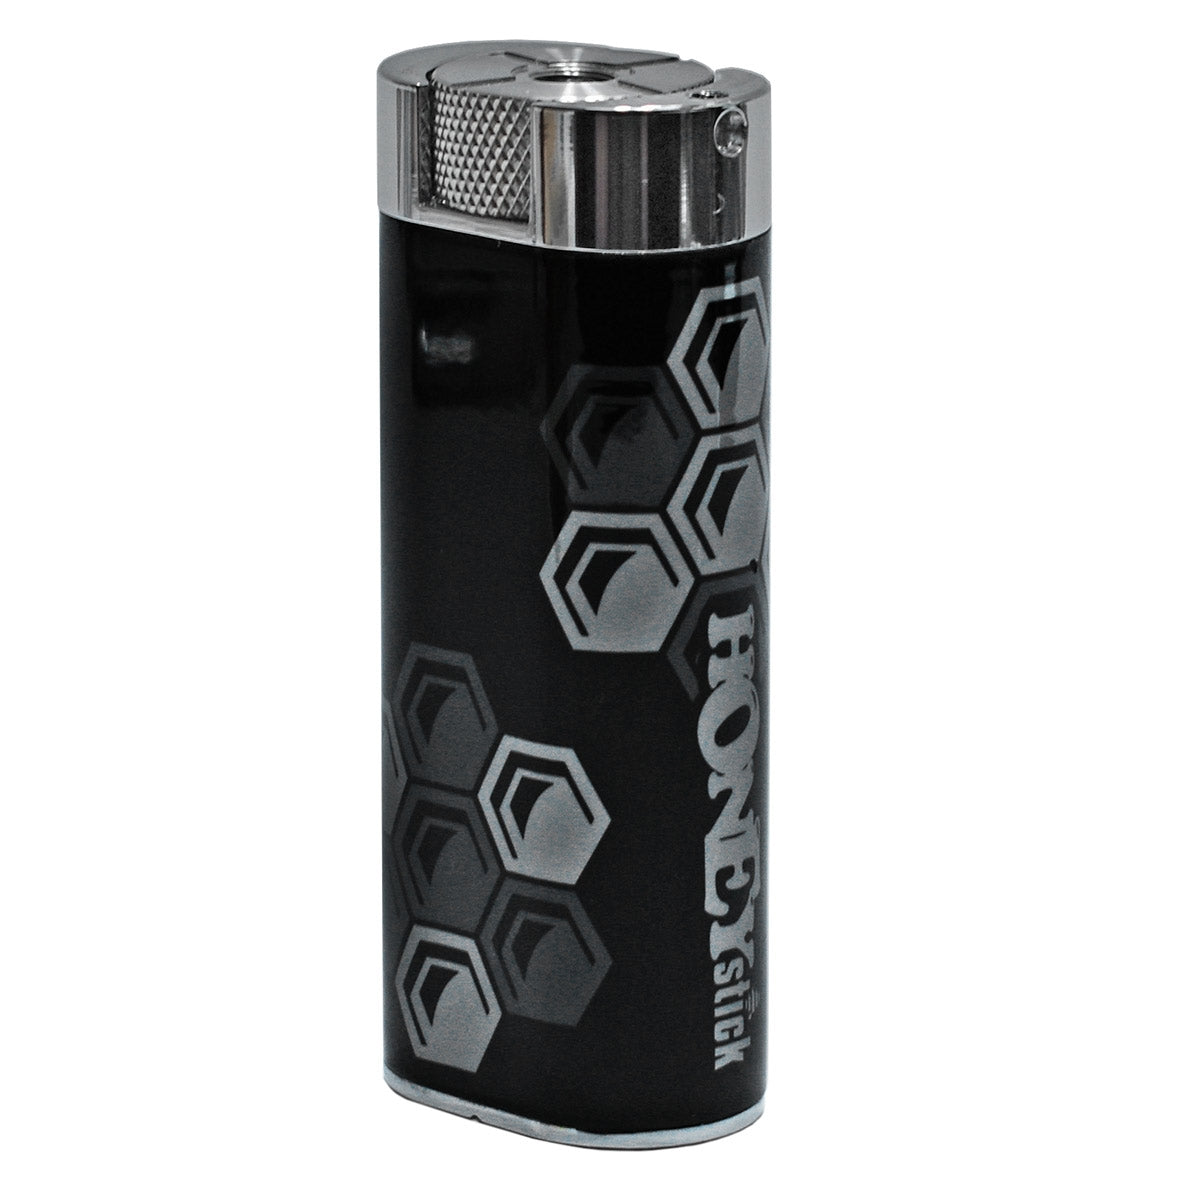 OG HoneyStick Wax Pen Battery